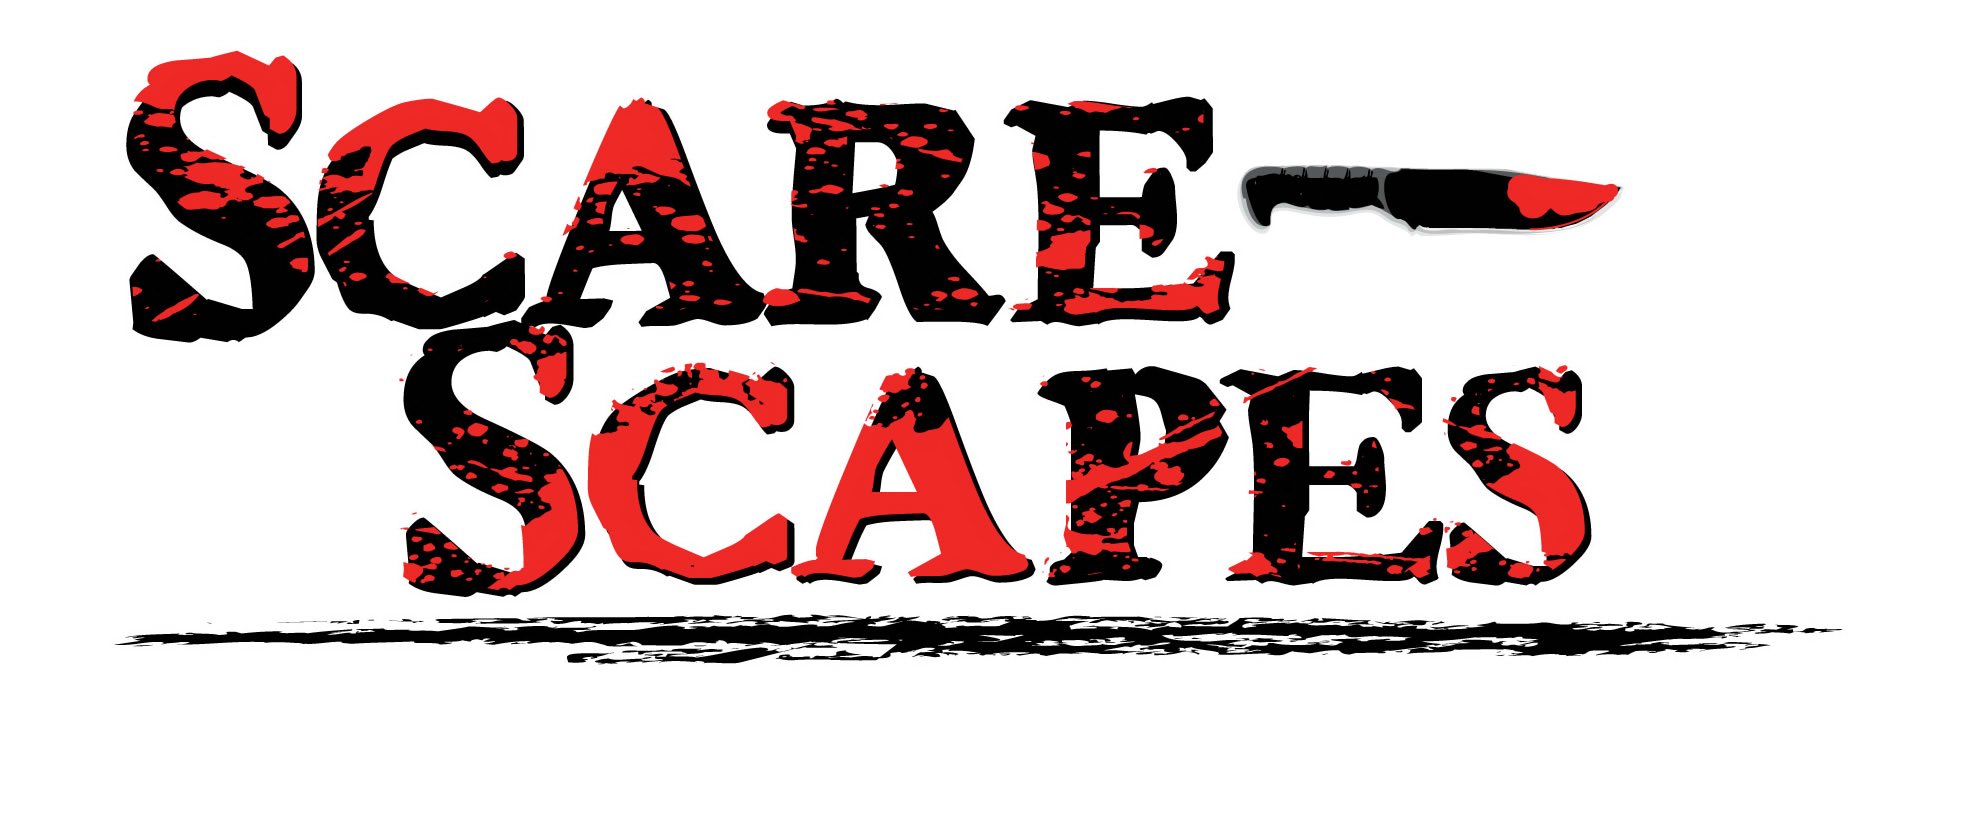 Trademark Logo SCARESCAPES